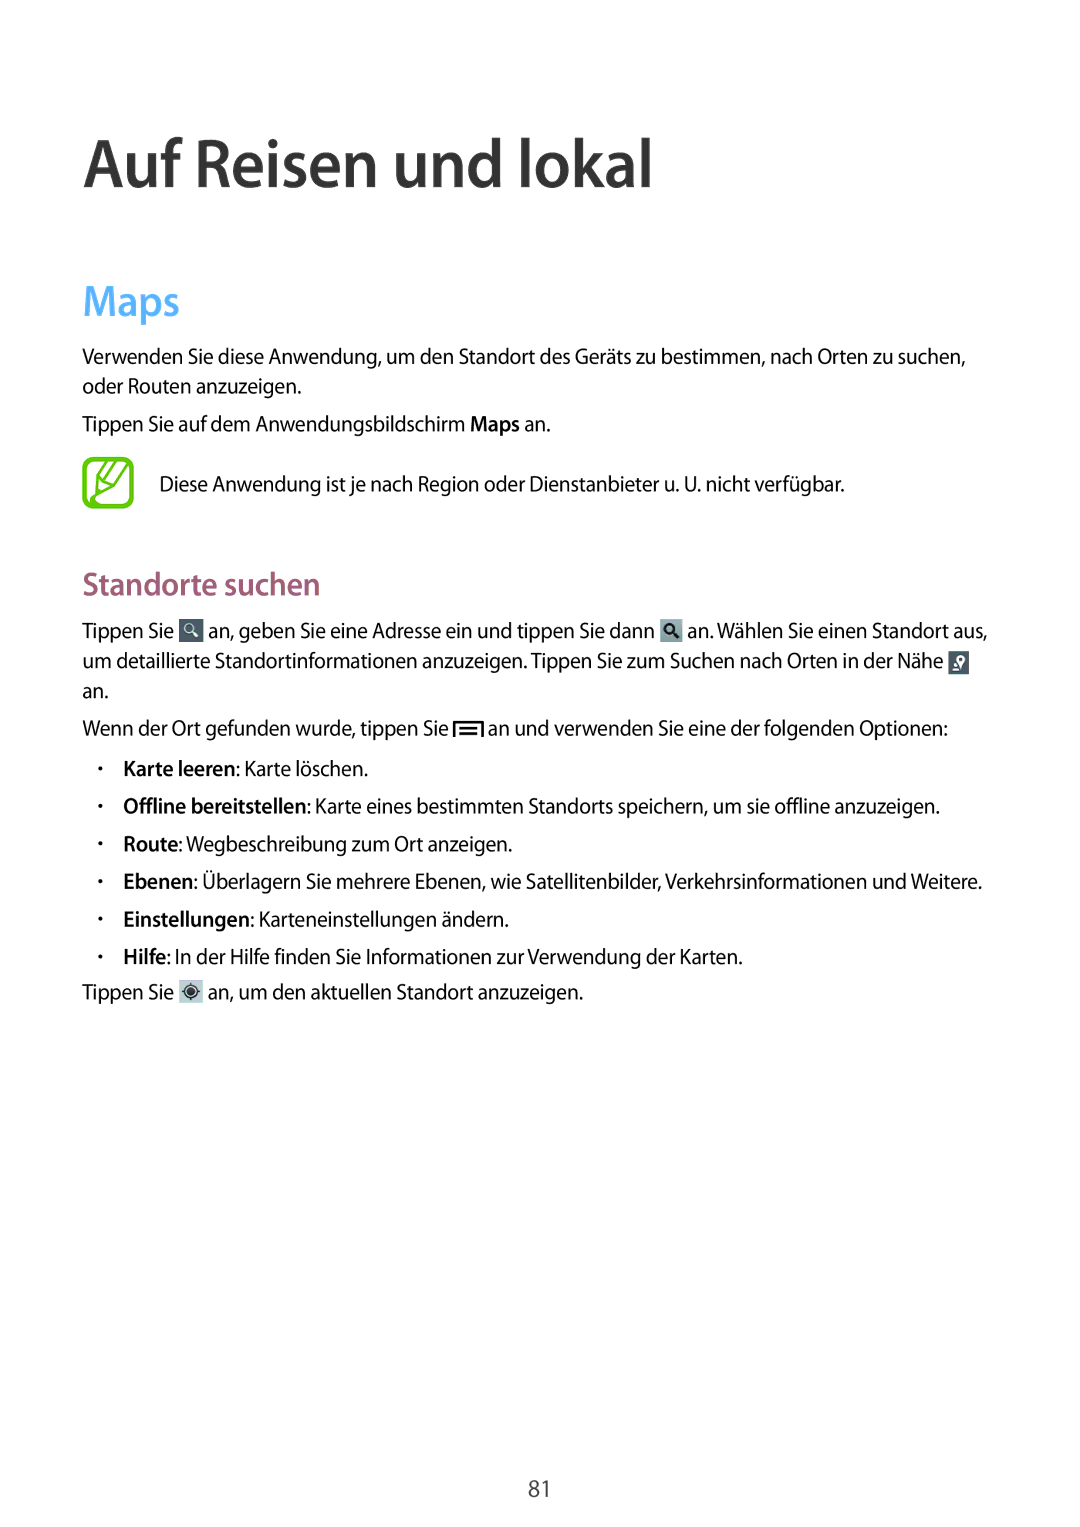 Samsung GT-S6310ZWNVDR, GT-S6310ZWNDTR, GT-S6310ZWNVID, GT-S6310DBNVDR manual Auf Reisen und lokal, Maps, Standorte suchen 